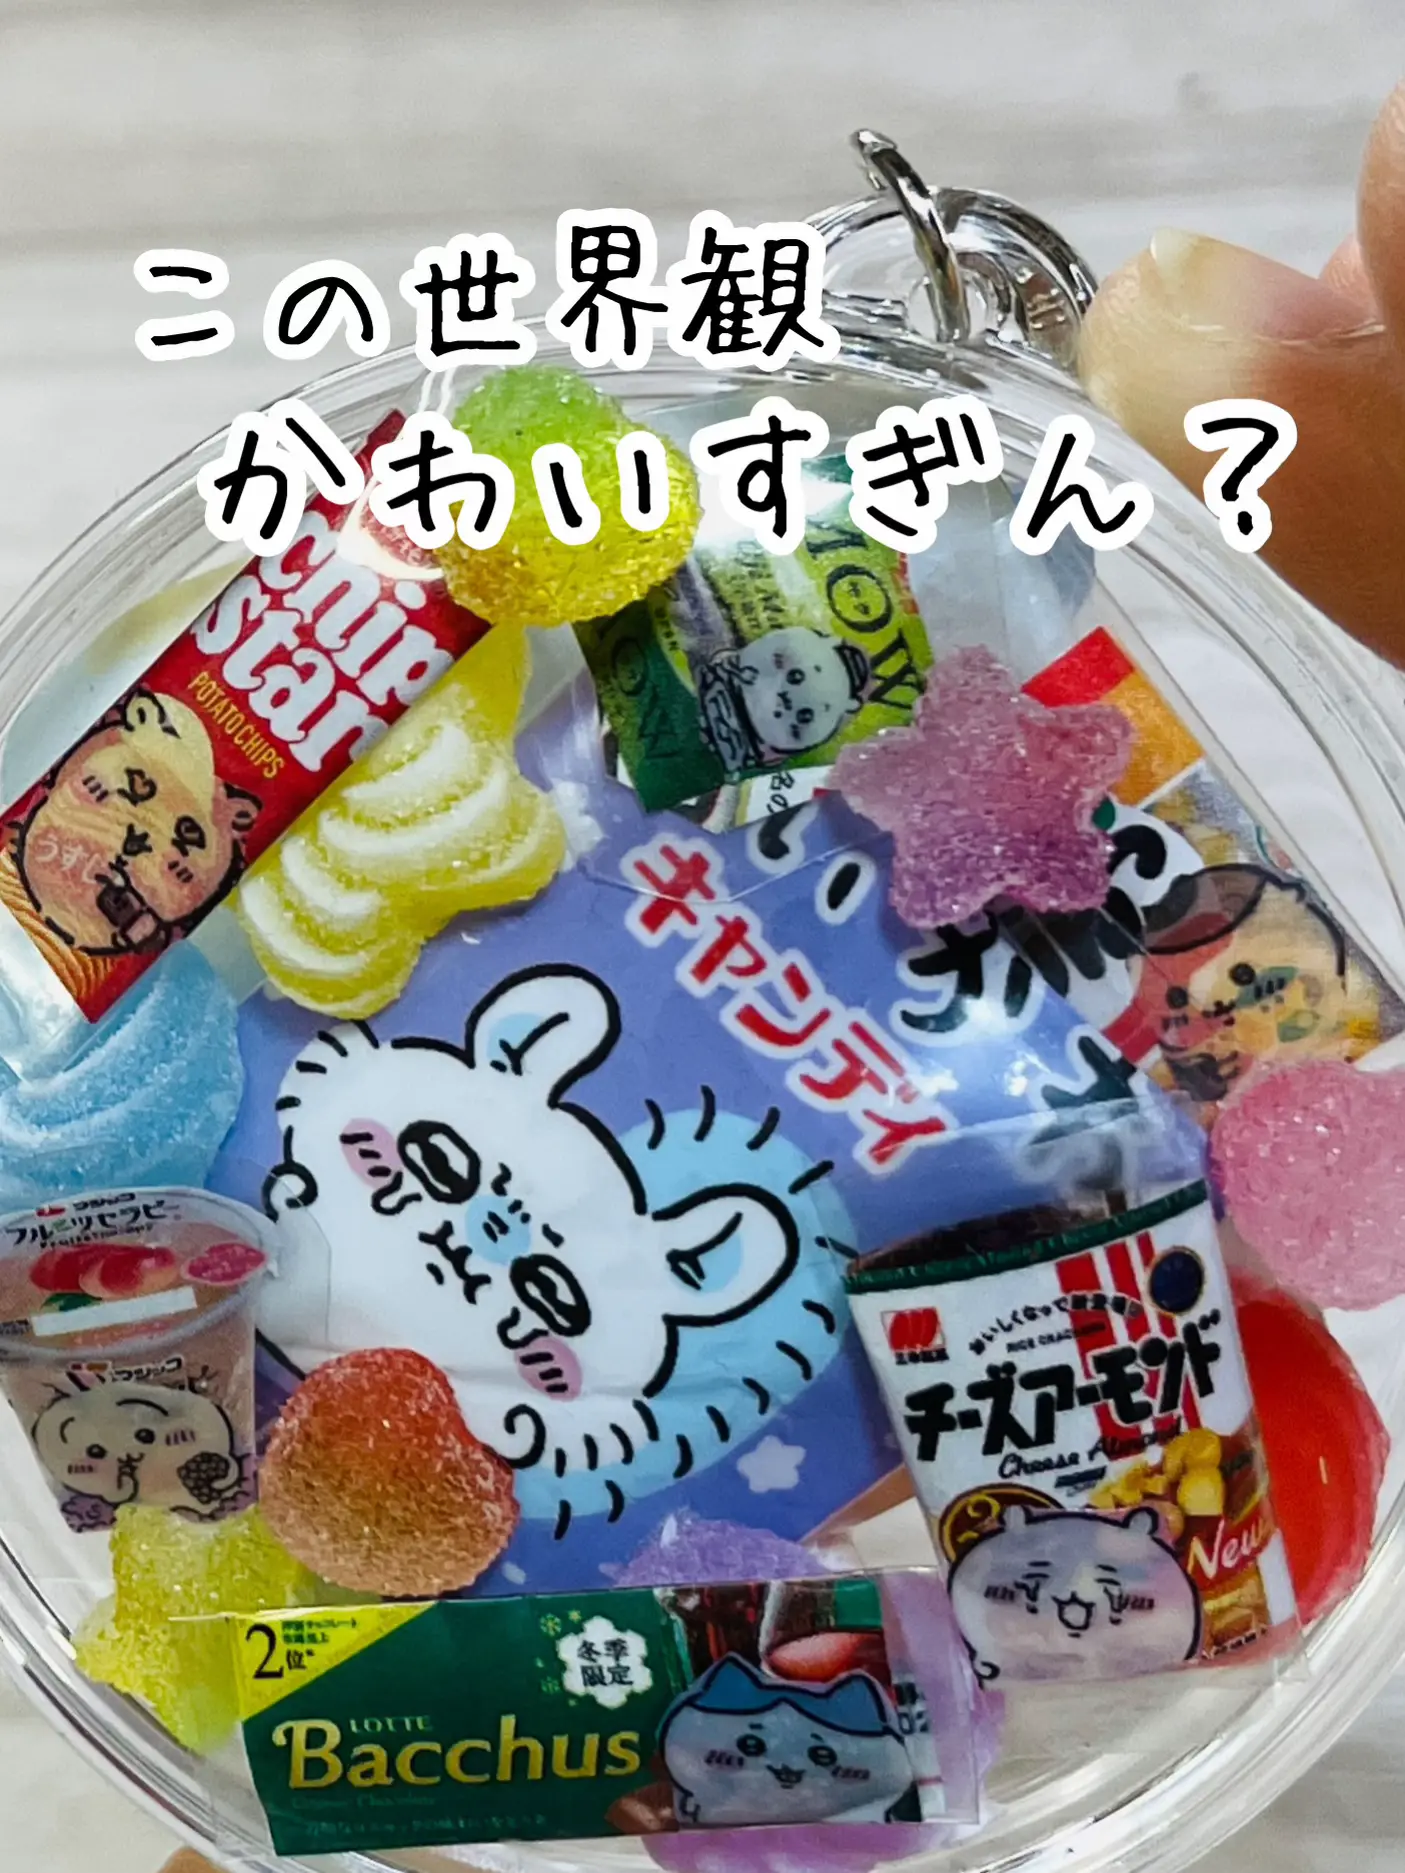 推しだらけのミニチュアお菓子キーホルダー | shimashimausagiが投稿 ...